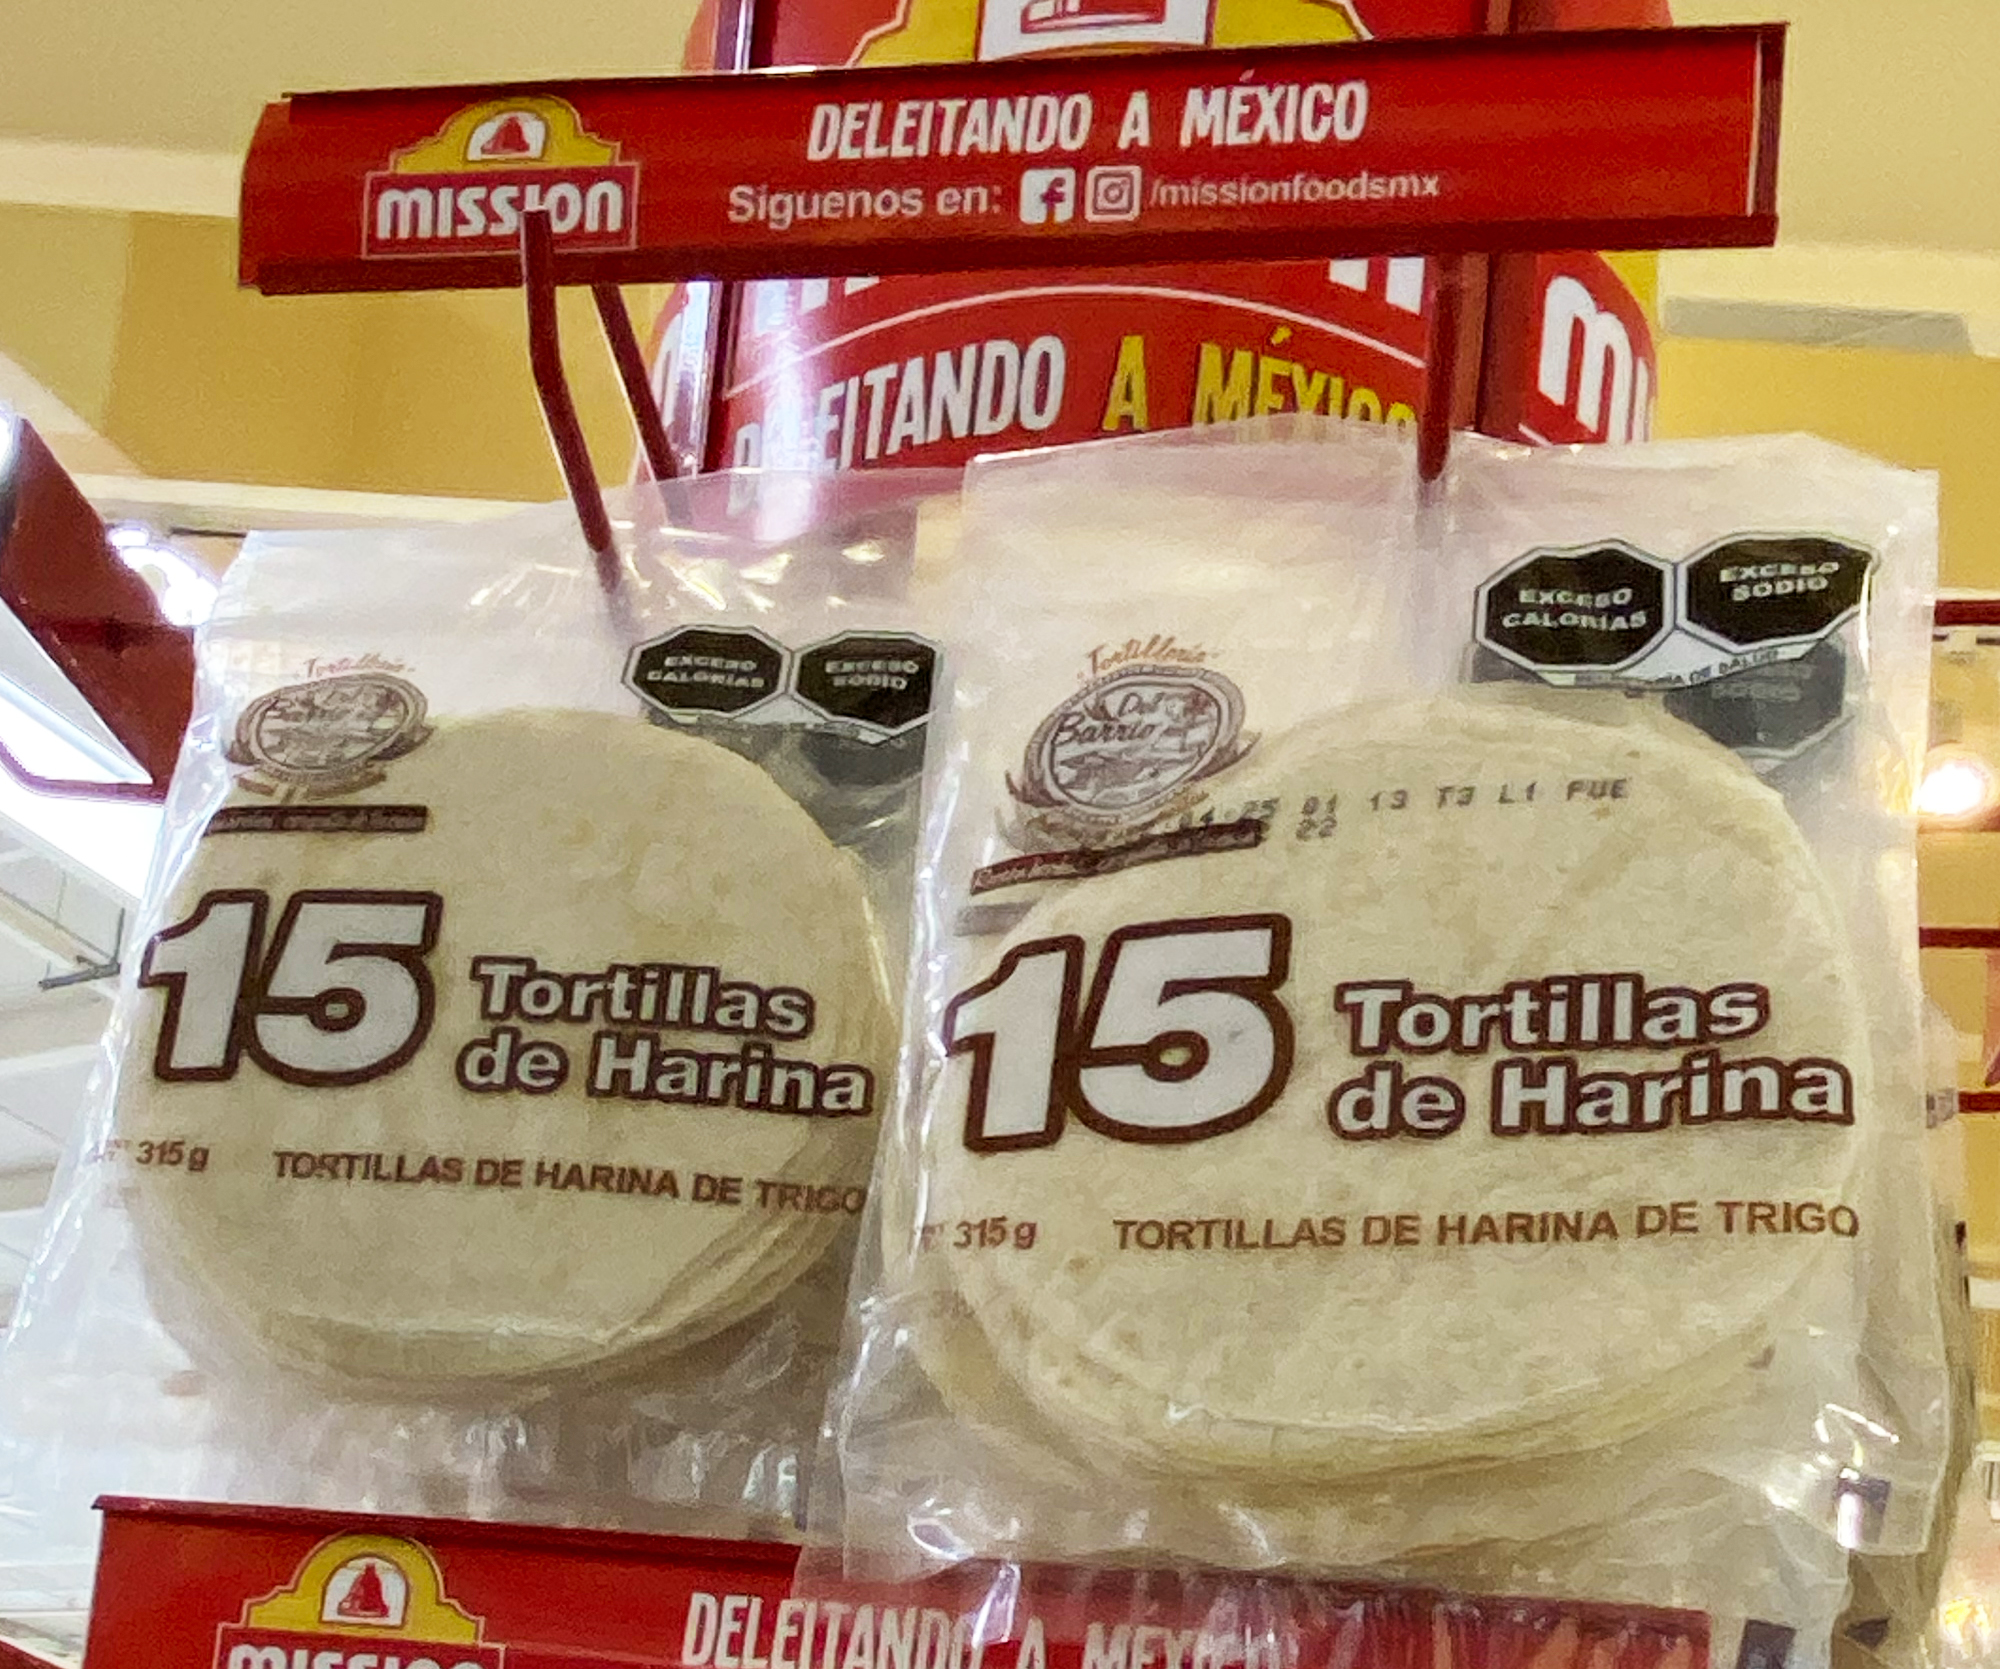 Paczka tortilli w sklepie na Jukatanie